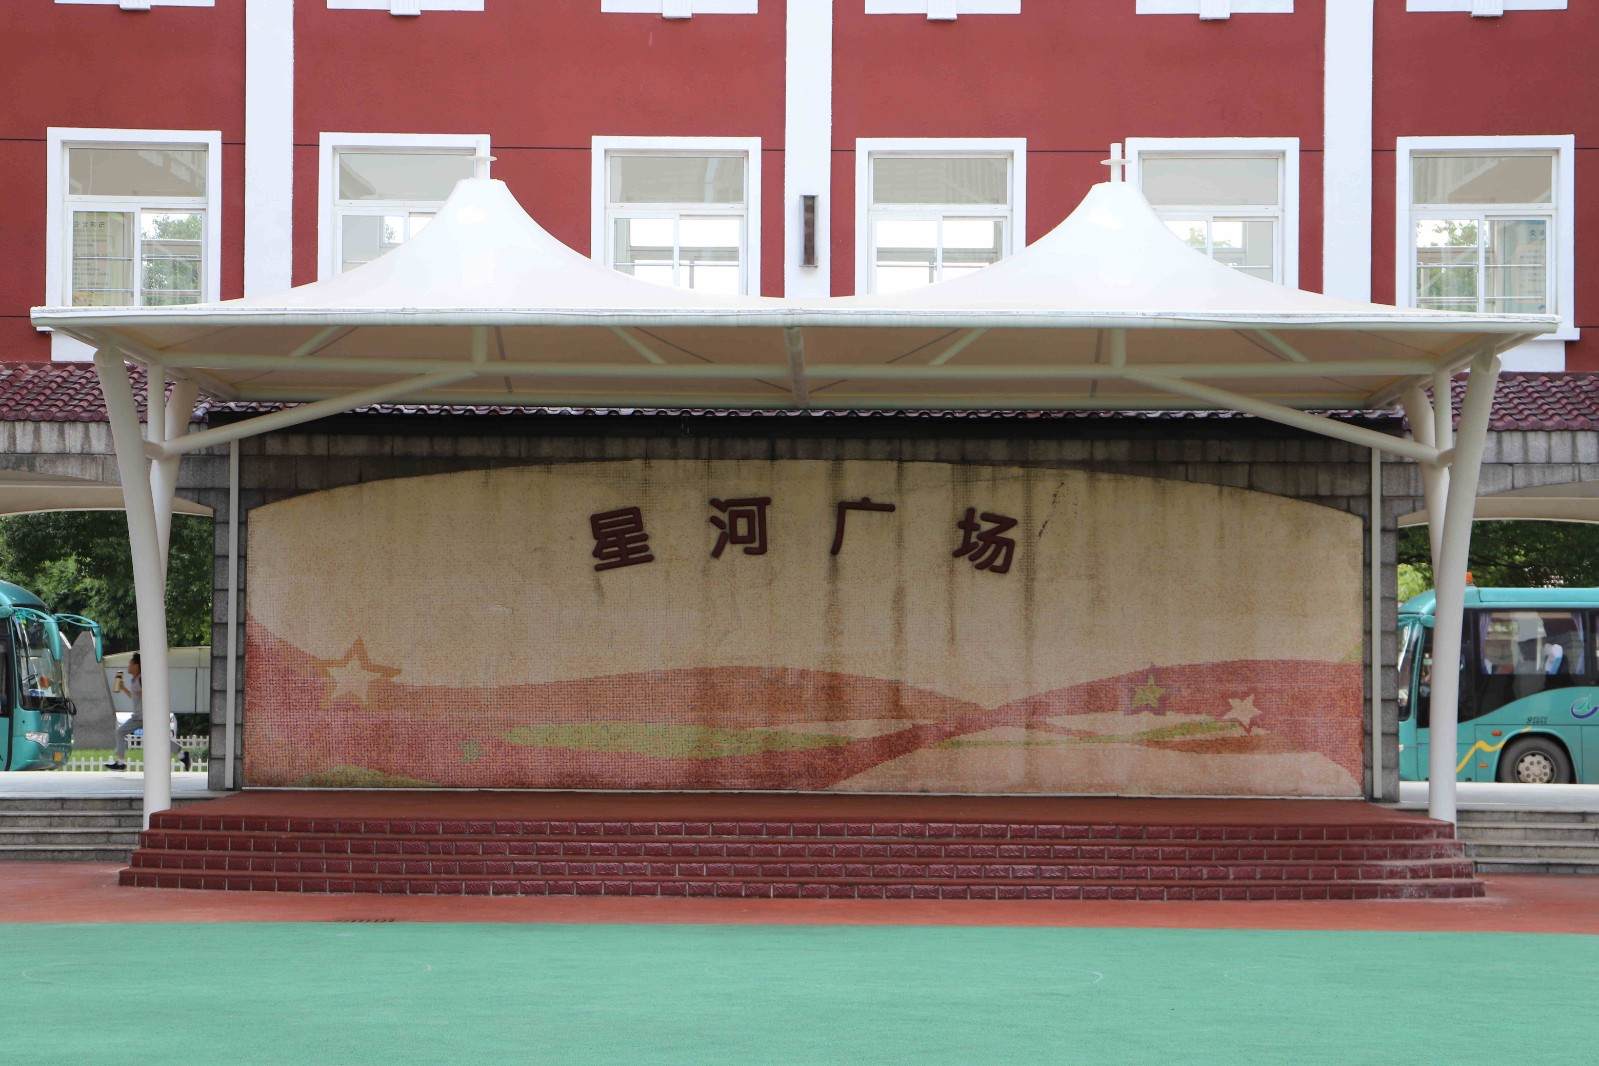 校园雕塑——“匠心智造”_上海盛策文化传播有限公司